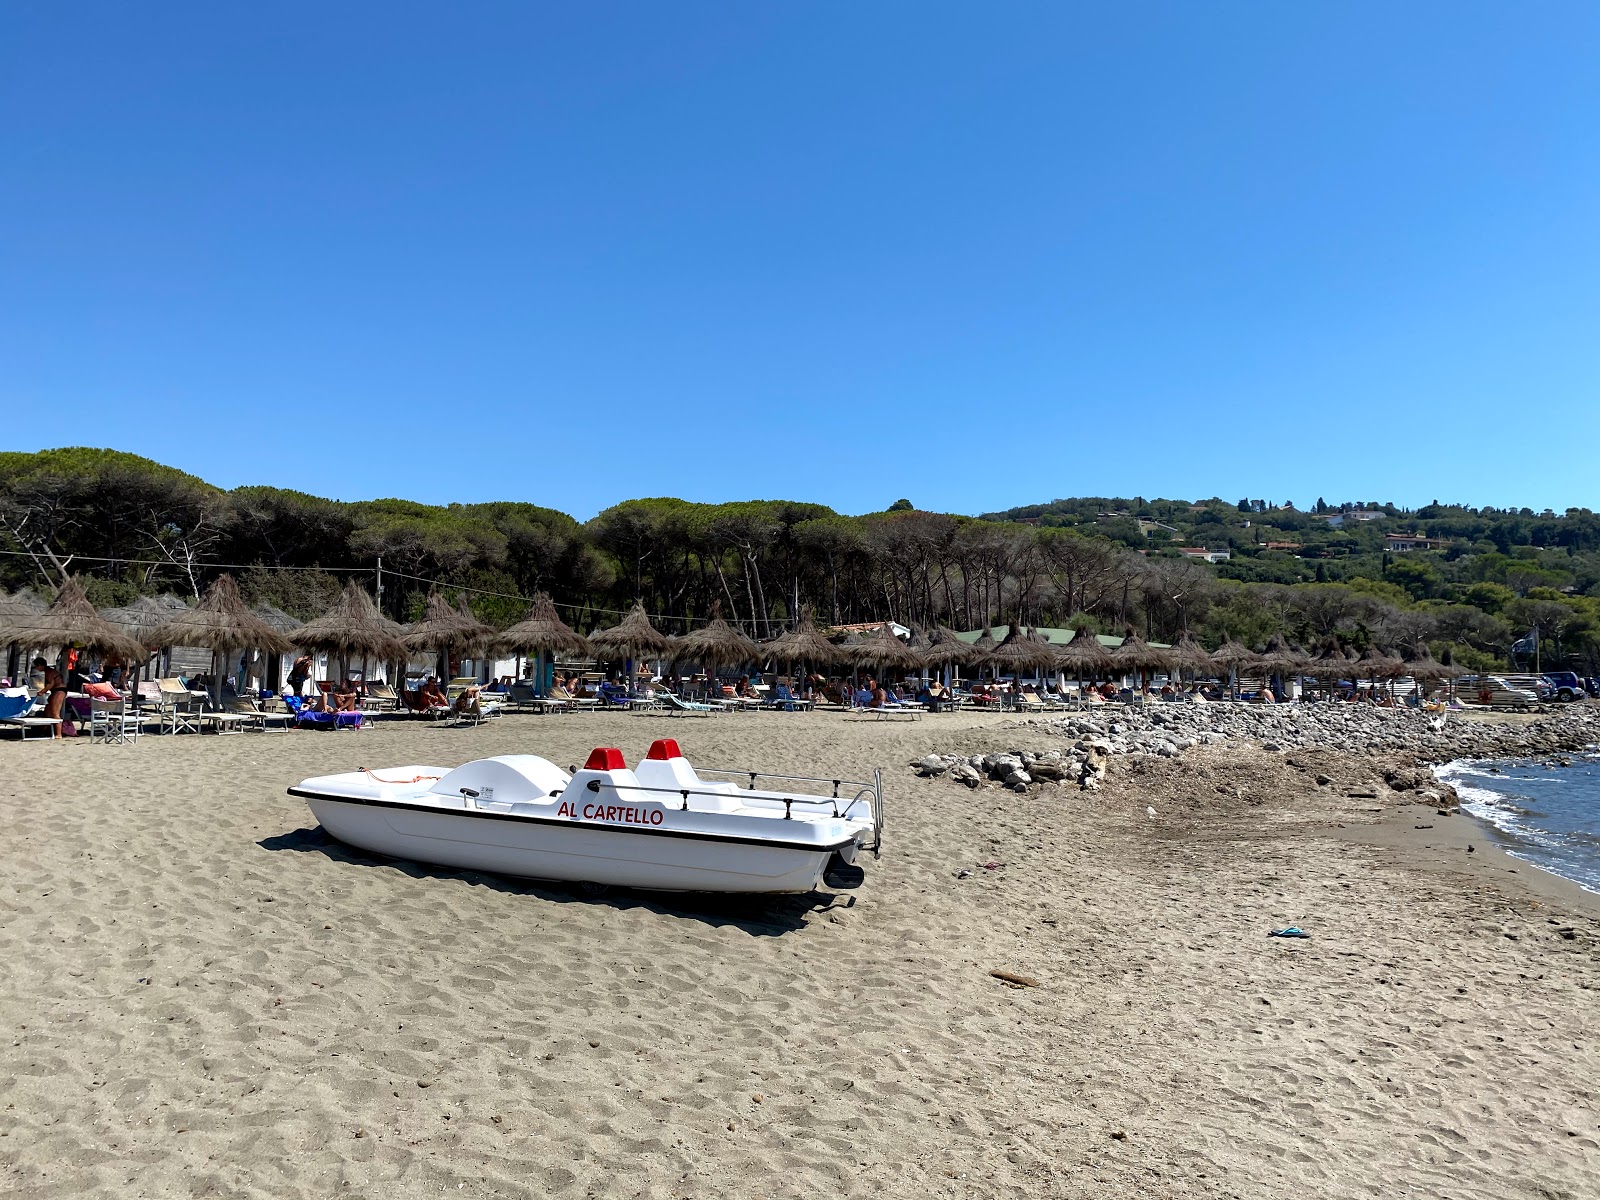 Fotografija Al Cartello beach nahaja se v naravnem okolju